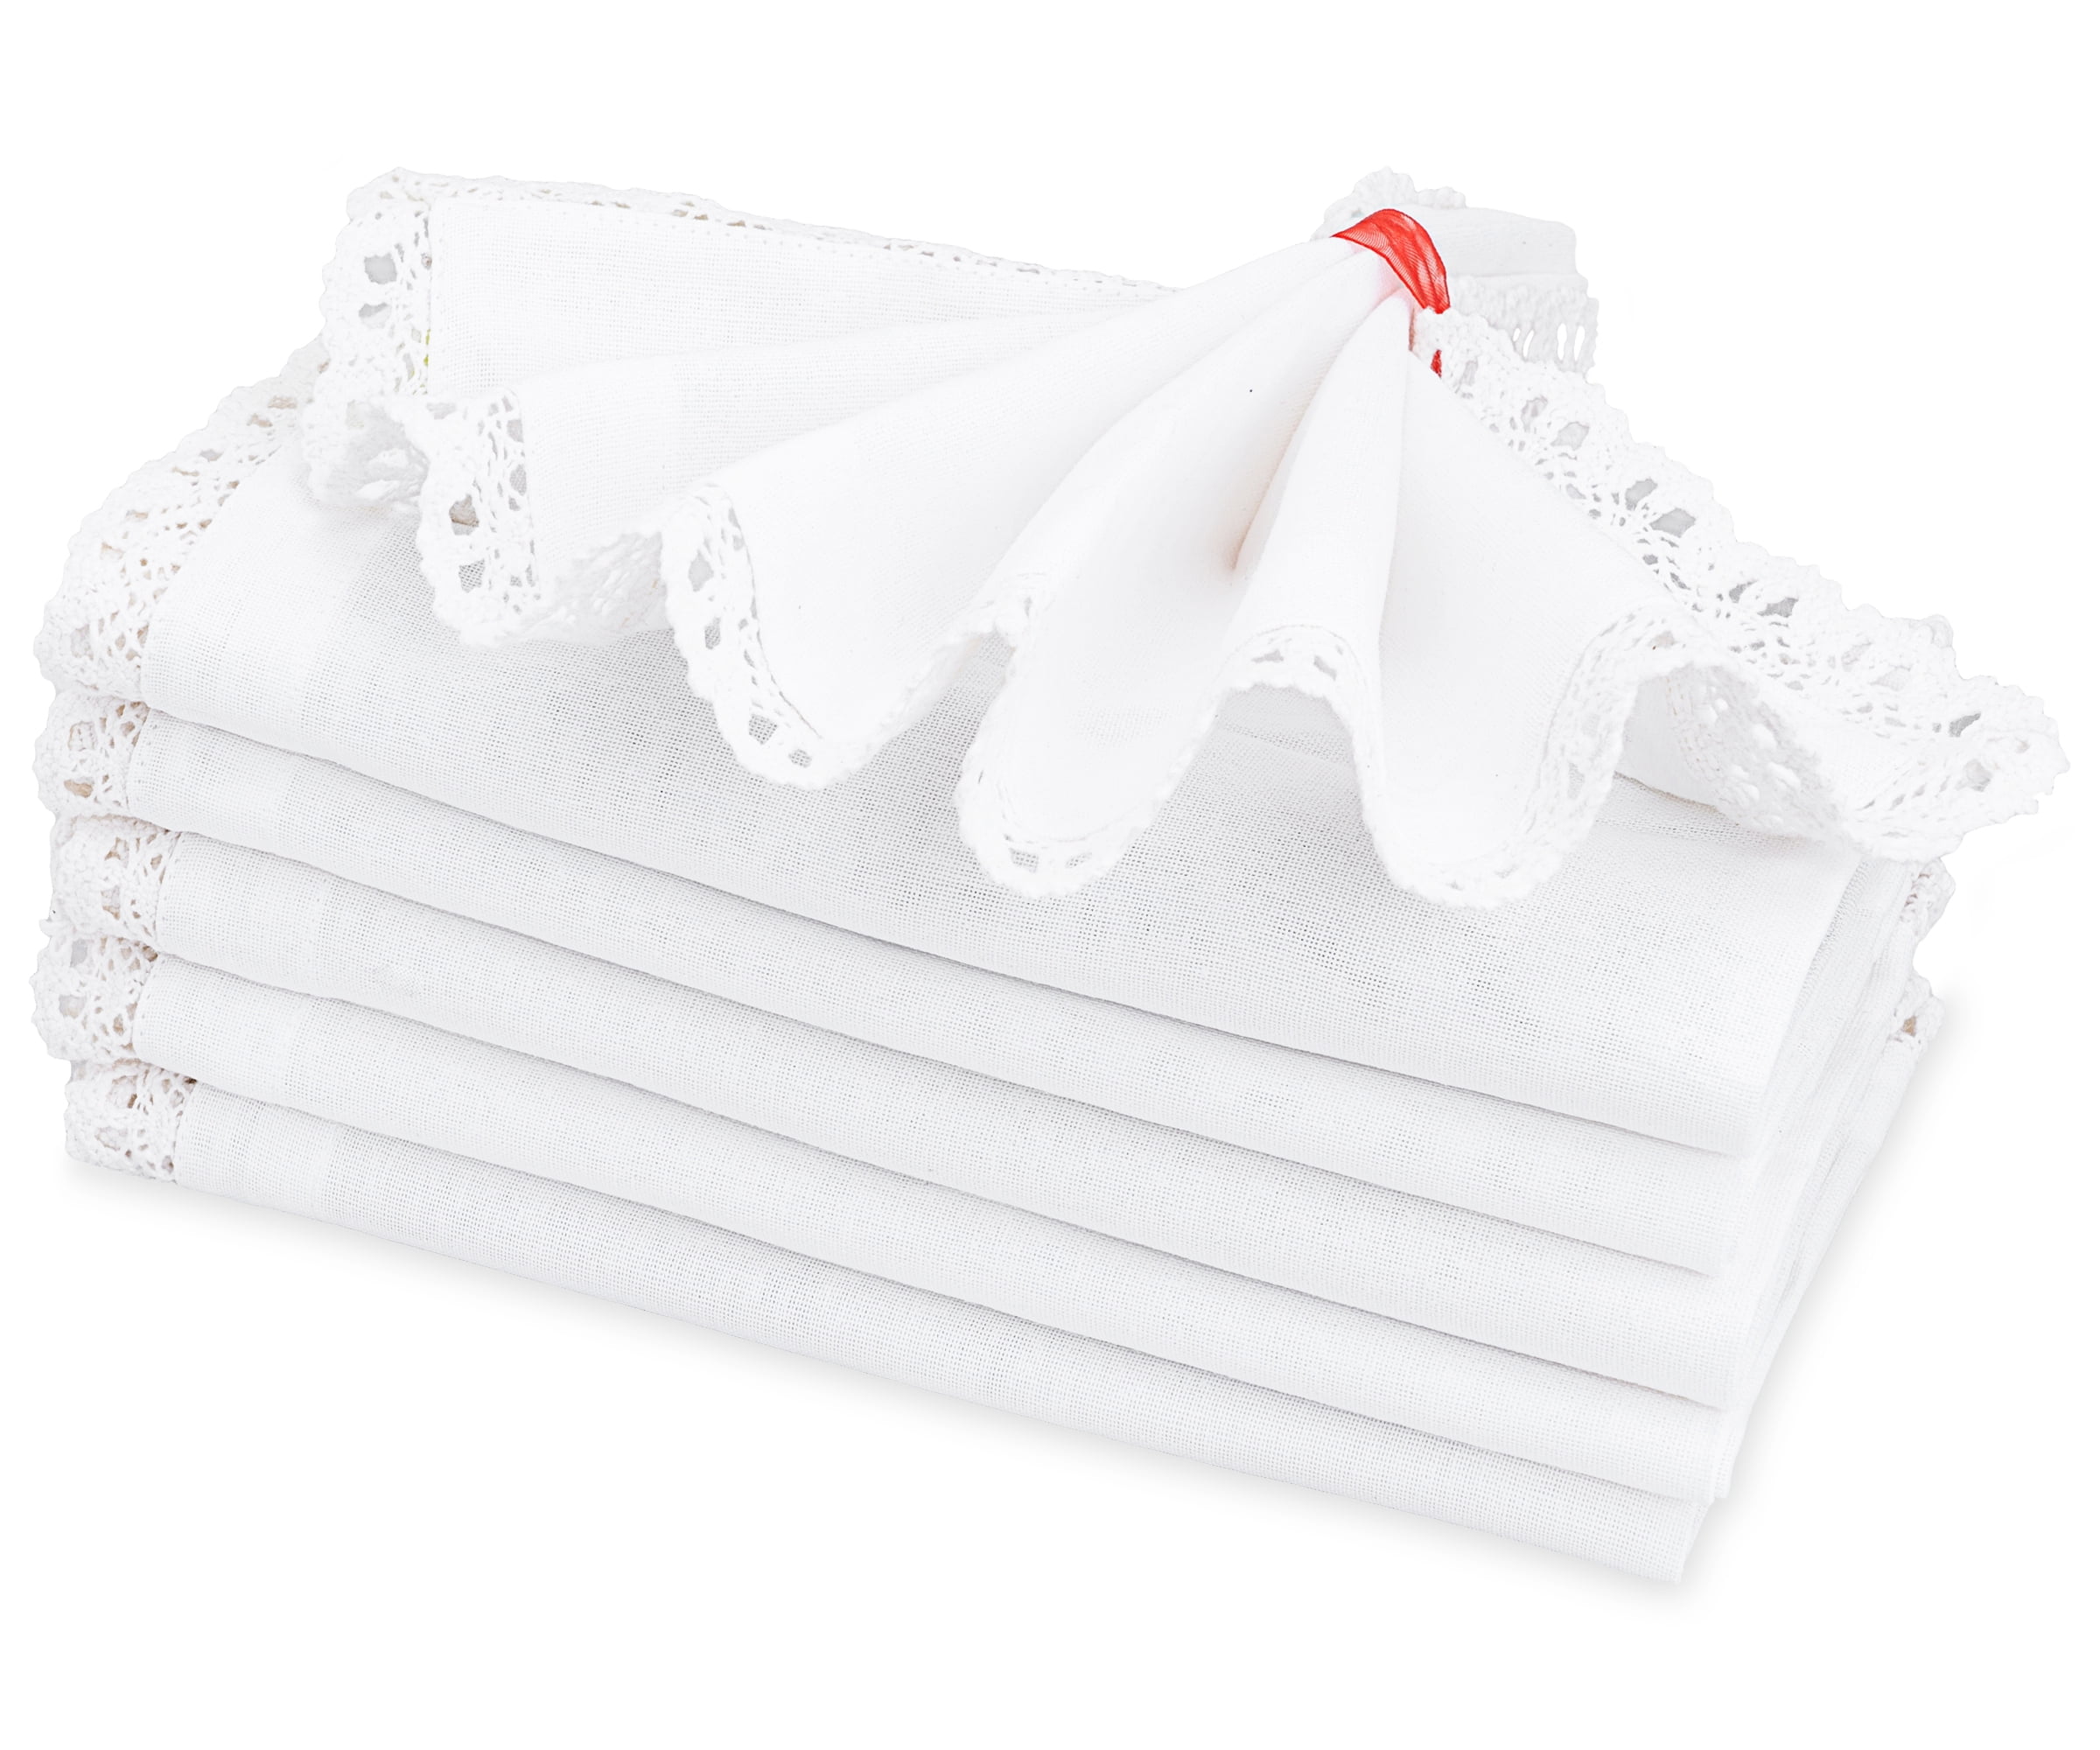 Linen Napkins- Set of 4-6-8 Washed natural linen napkins  16.5''x16.5''(42x42cm) Wedding linen napkins-Linen table-cloth napkins